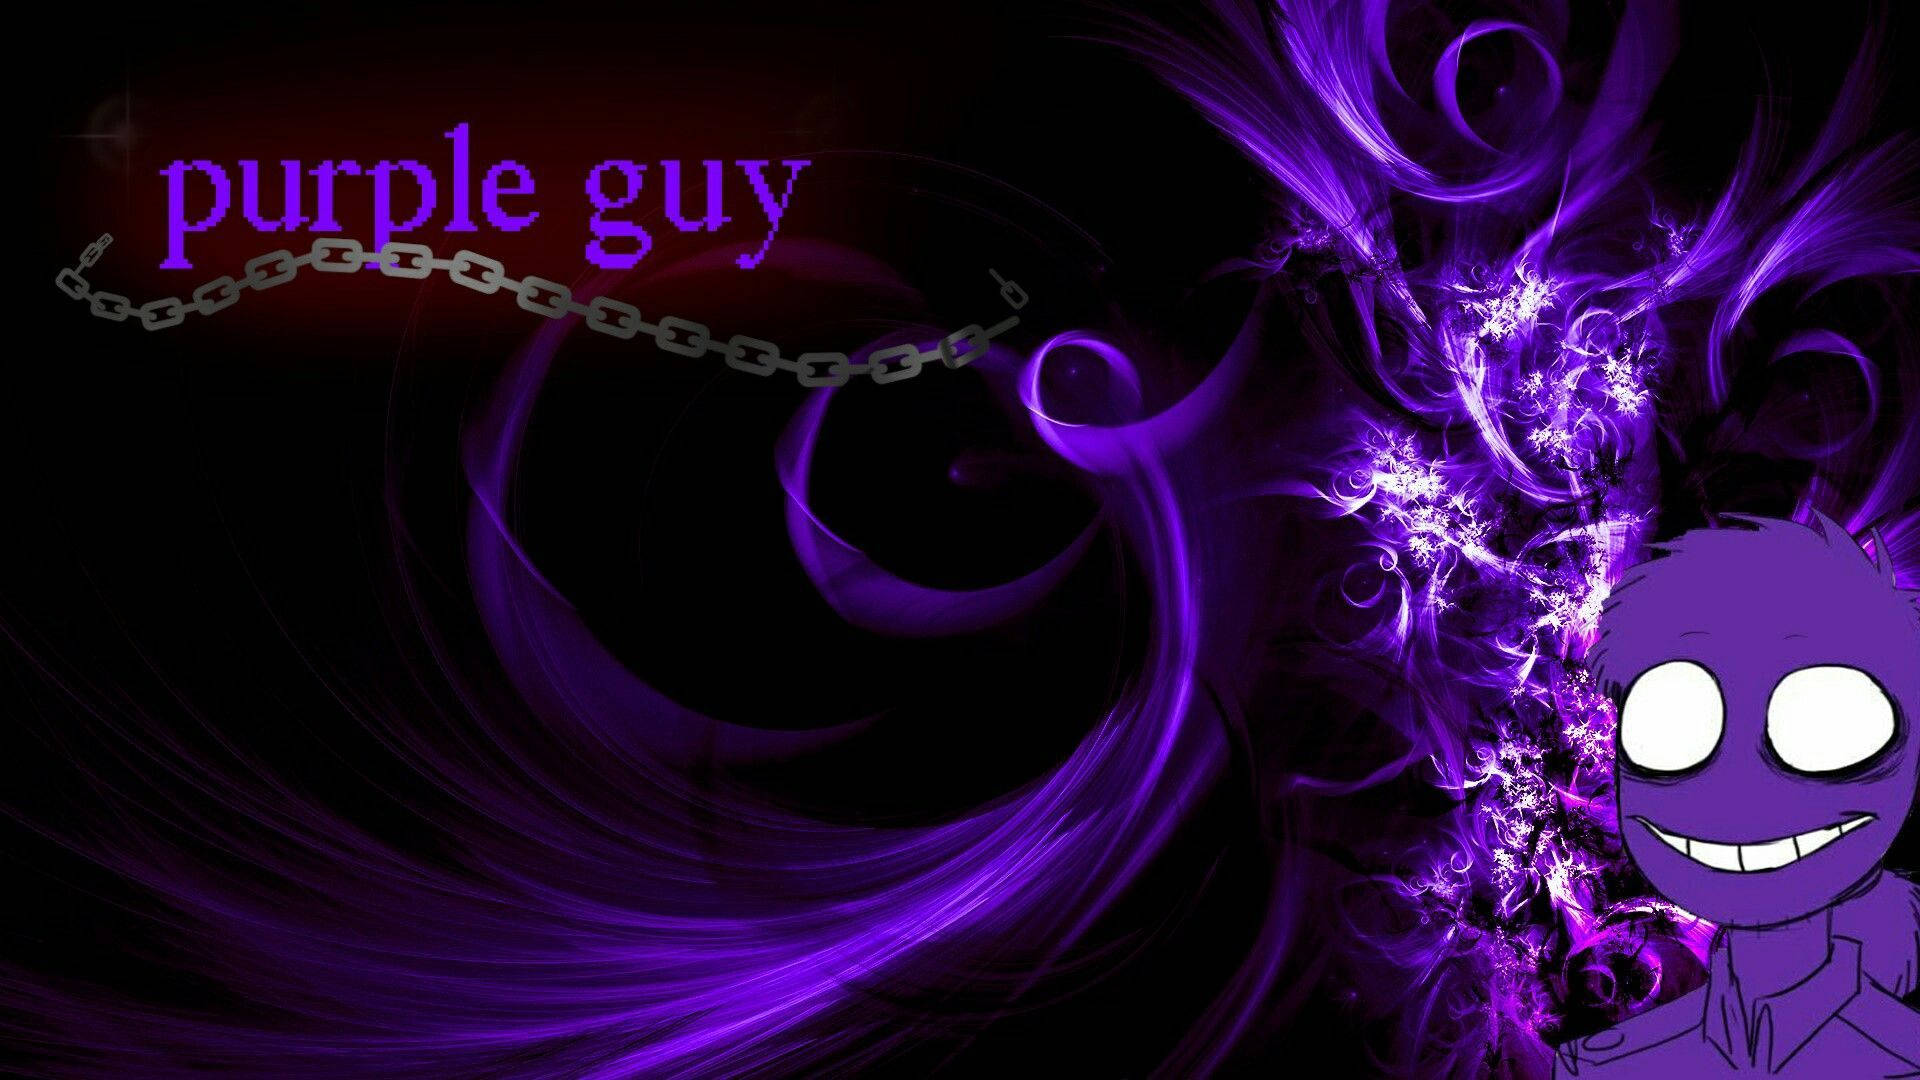 Free Purple Guy Wallpaper Downloads, Purple Guy Wallpaper for FREE